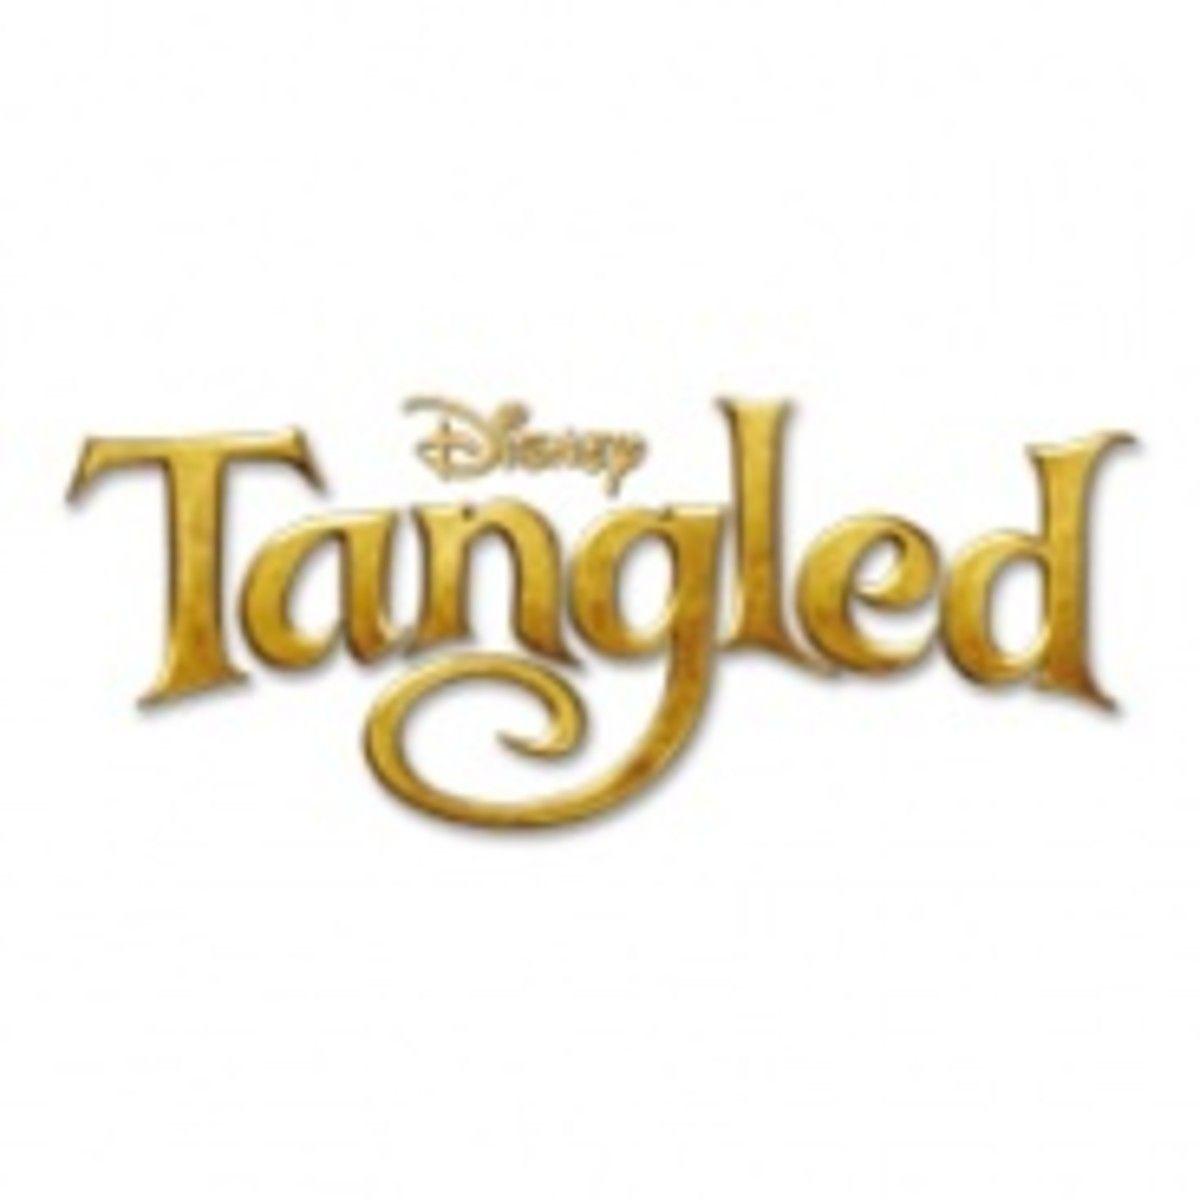 Tangled Logo - Disney's Tangled tops the box office - Licensing.biz